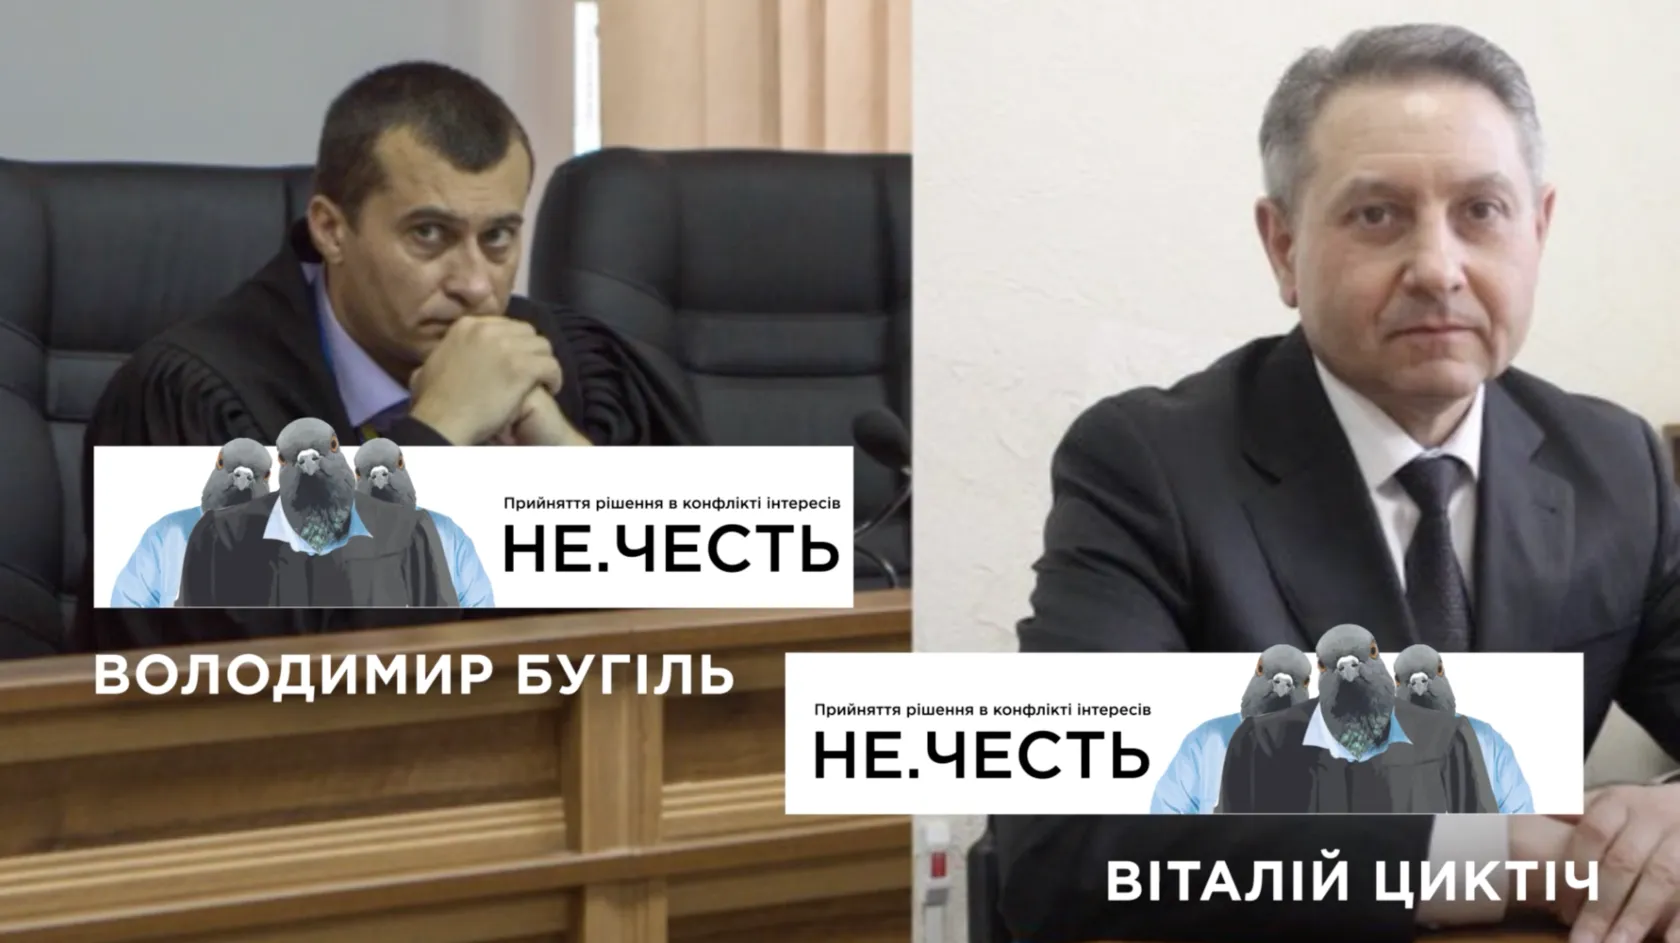 Судді Майдану Володимир Бугіль та Віталій Циктіч